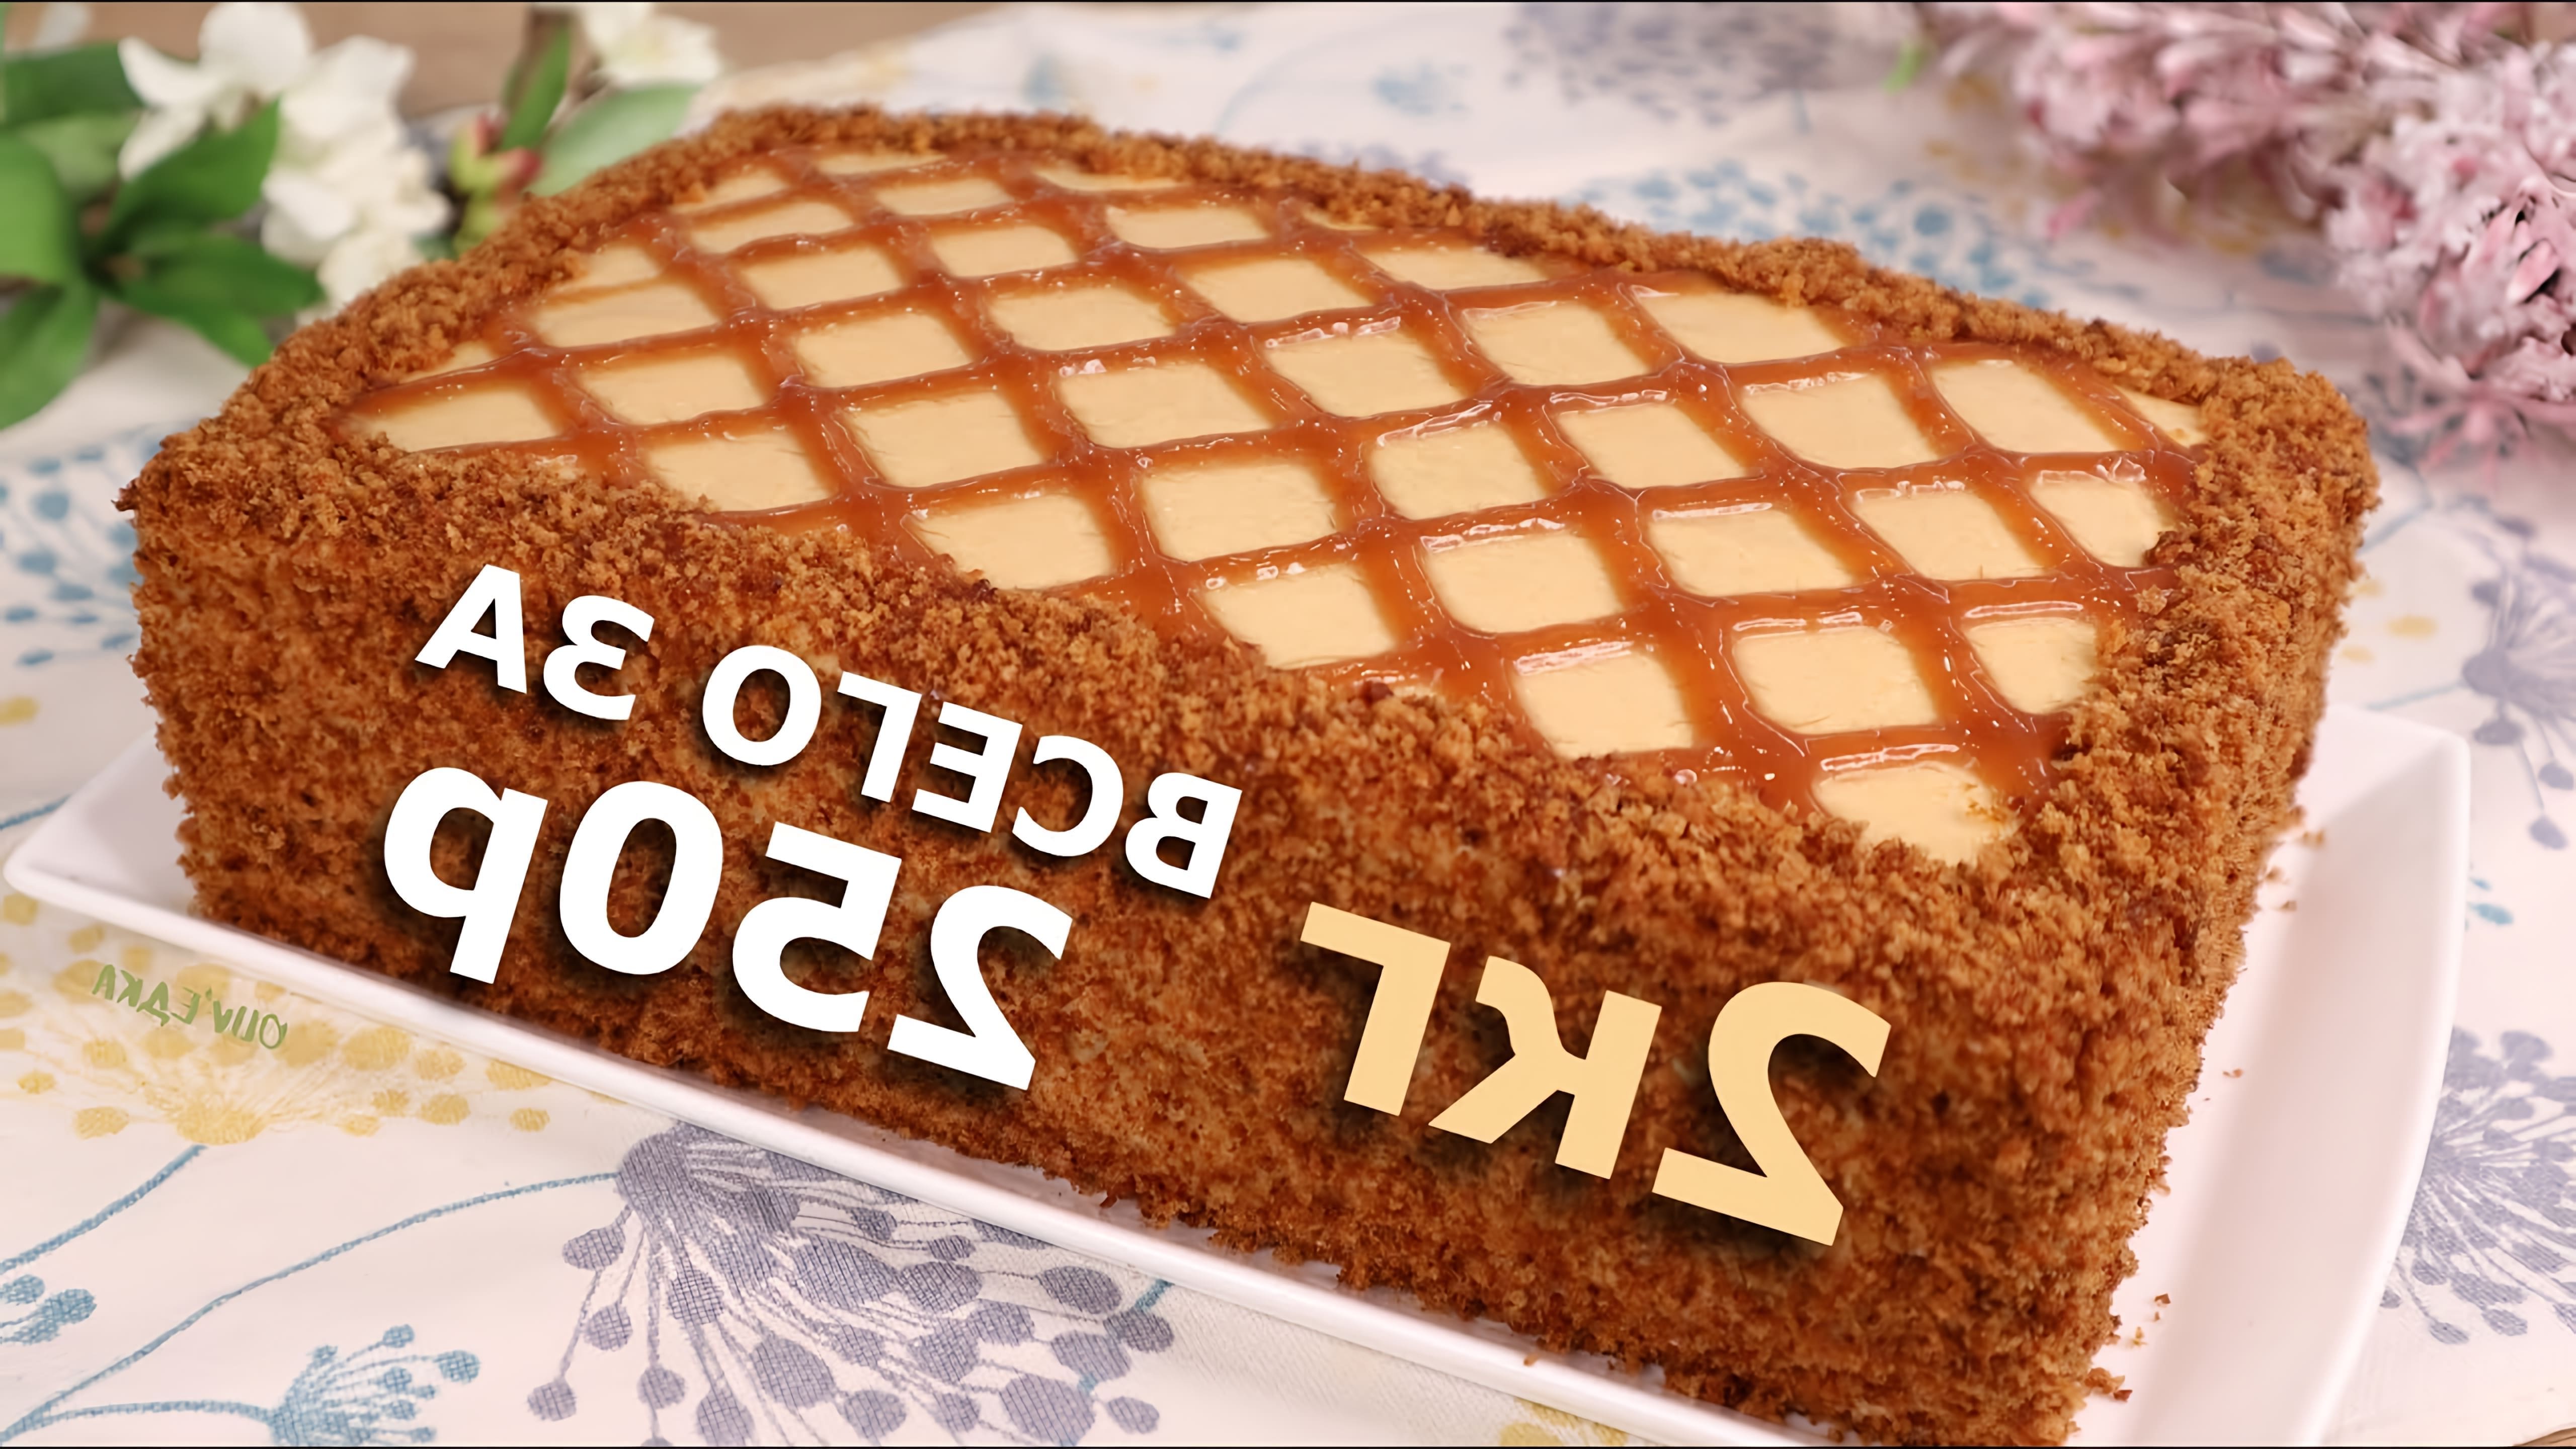 Видео как приготовить бюджетный торт за 250 рублей, используя недорогие ингредиенты, такие как яйца, сахар, мед, молоко и мука